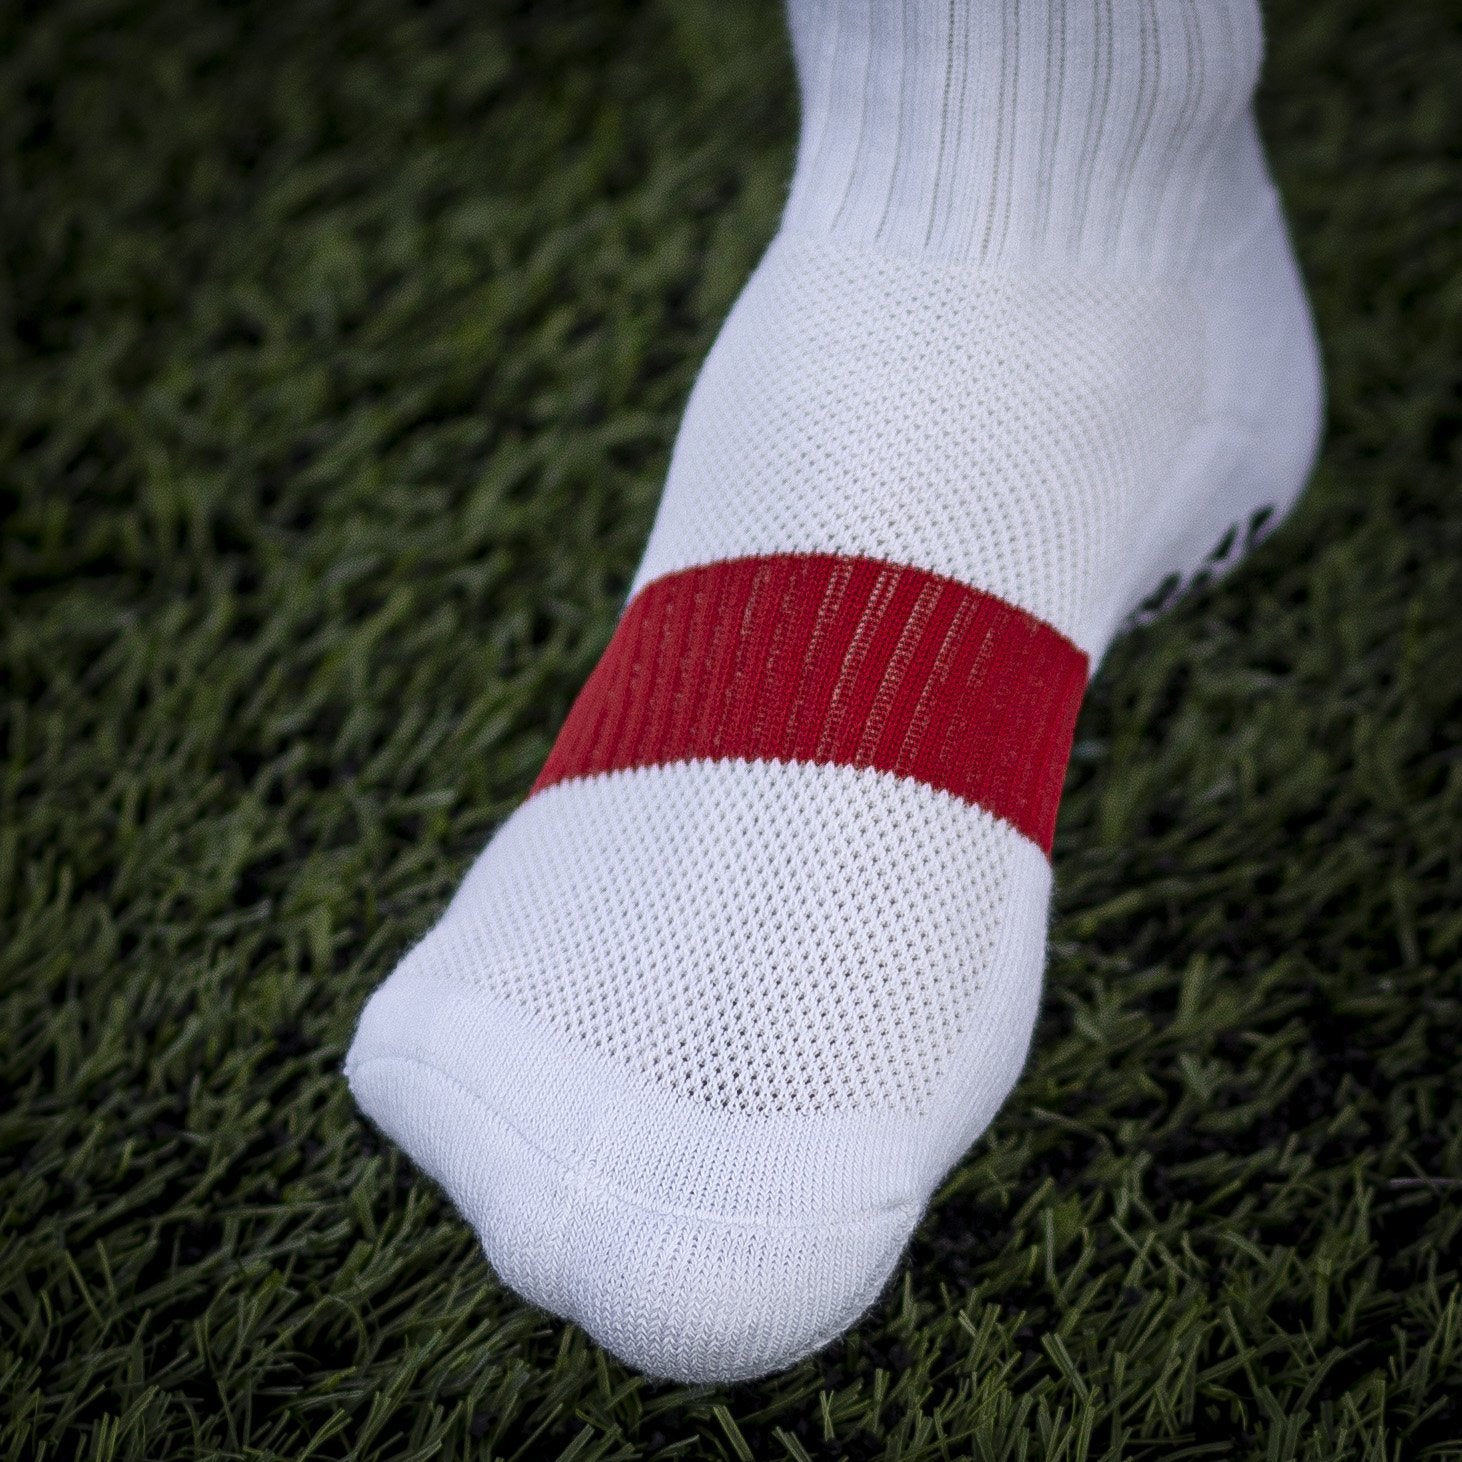 The BEST Grip Socks? NEW Pure Grip Socks Pro Review (SR4U) 